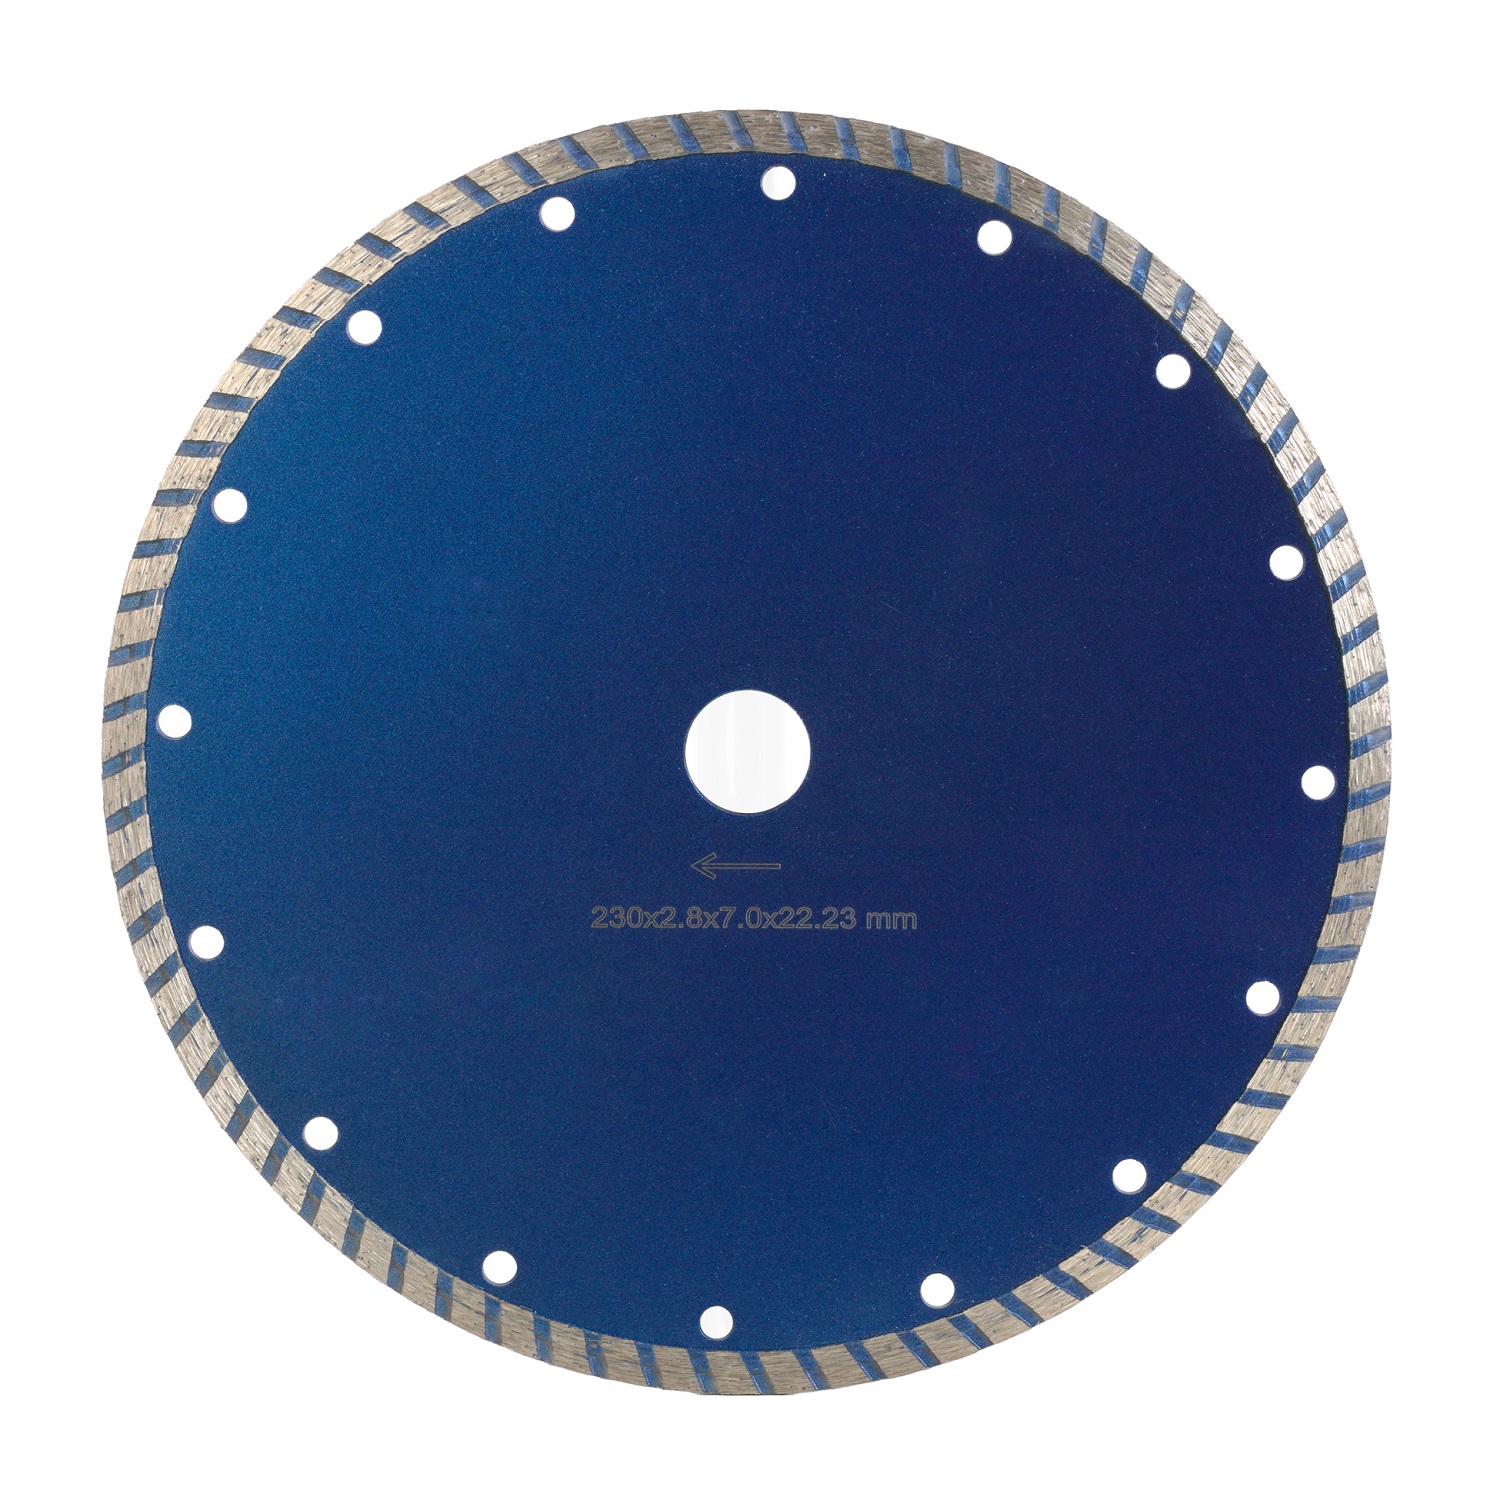 Диск турбо COBRA Standard д.230*22,2 (2,8*7)мм | универсал/dry DIAMASTER диск сегментный laser ultra д 450 2 8 25 4 40 4 0 10 16 мм 28 24 4 z асфальт wet dry diamaster